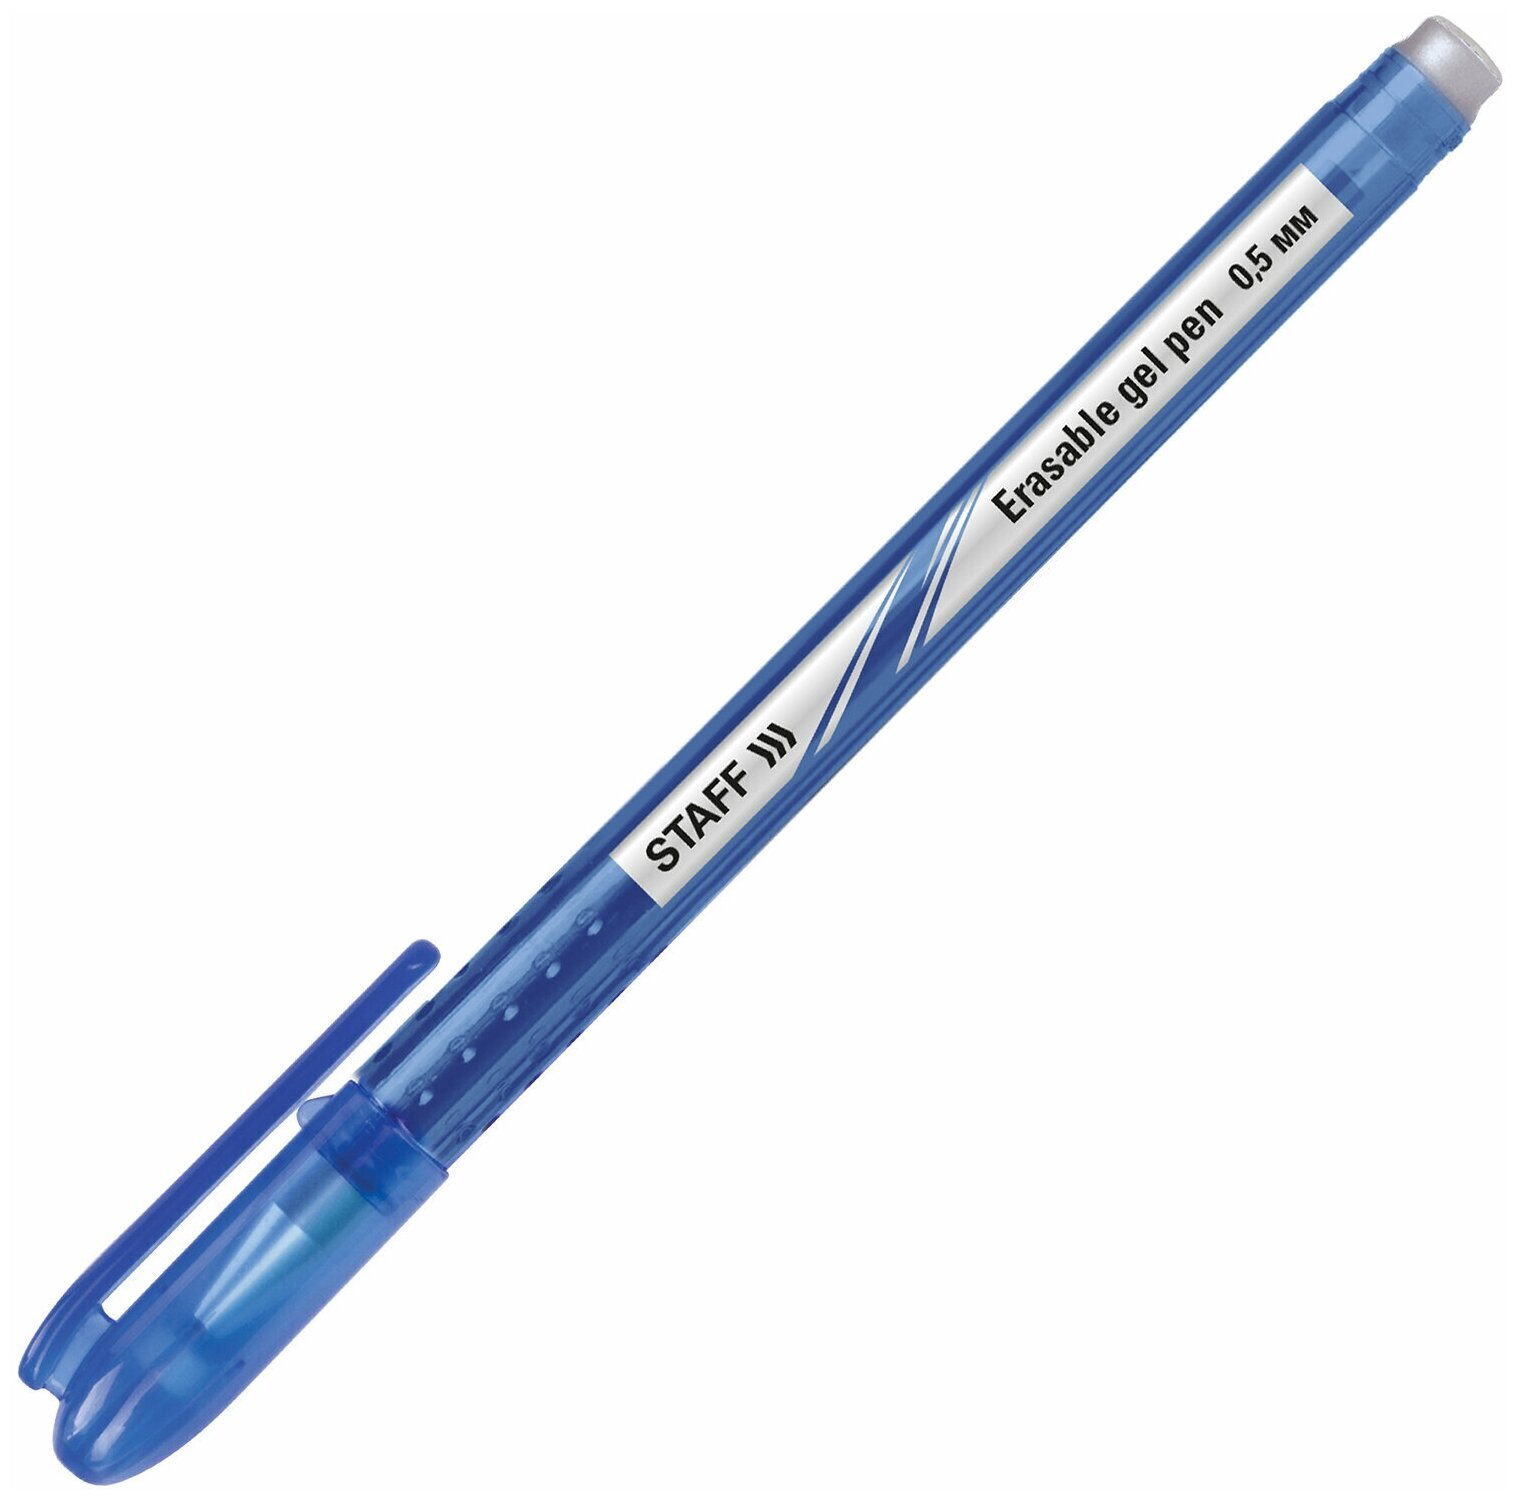 Ручка стираемая гелевая Staff корпус синий, хромированные детали, 0,5 мм, линия 0,38 мм, синяя (142499)